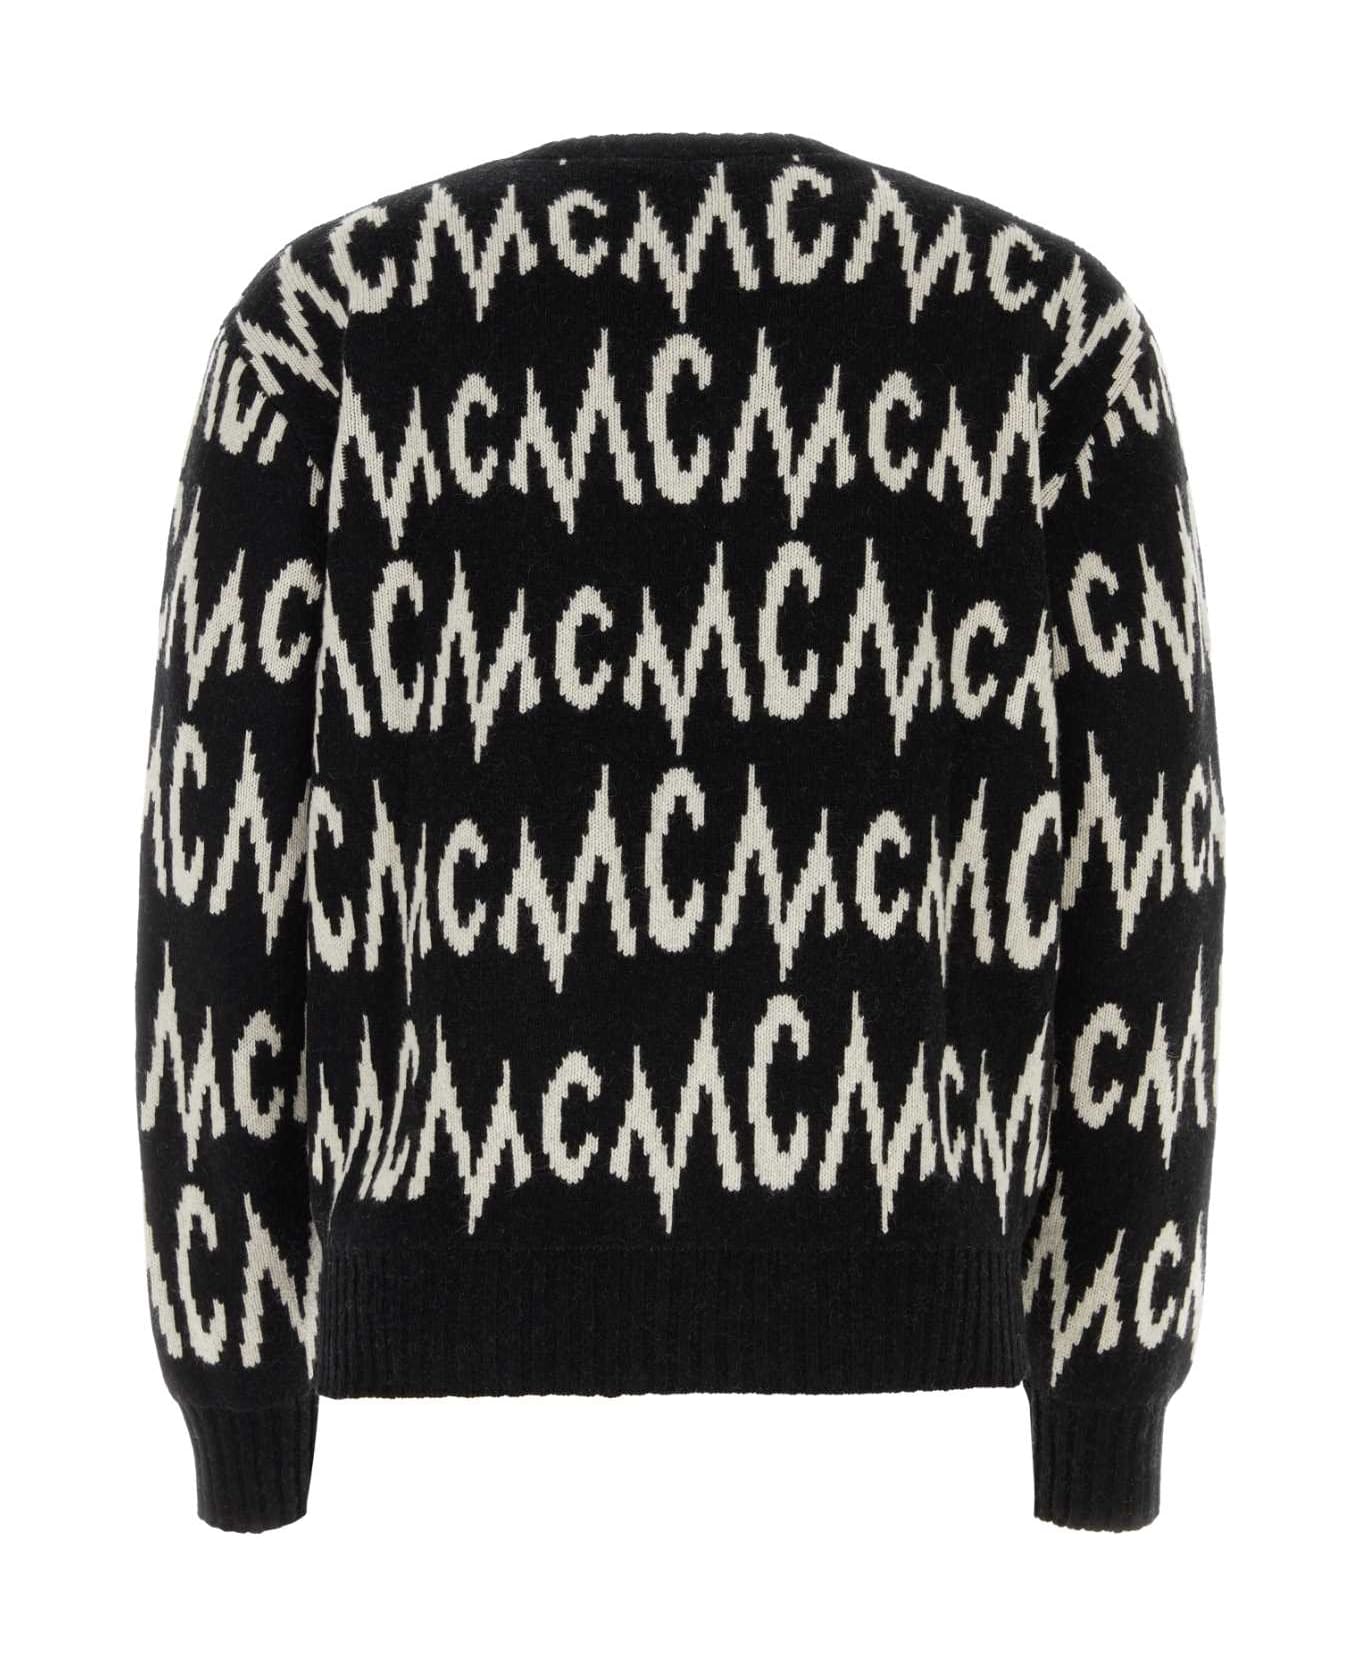 MCM Embroidered Cashmere Blend Sweater - BLACK + EGRET